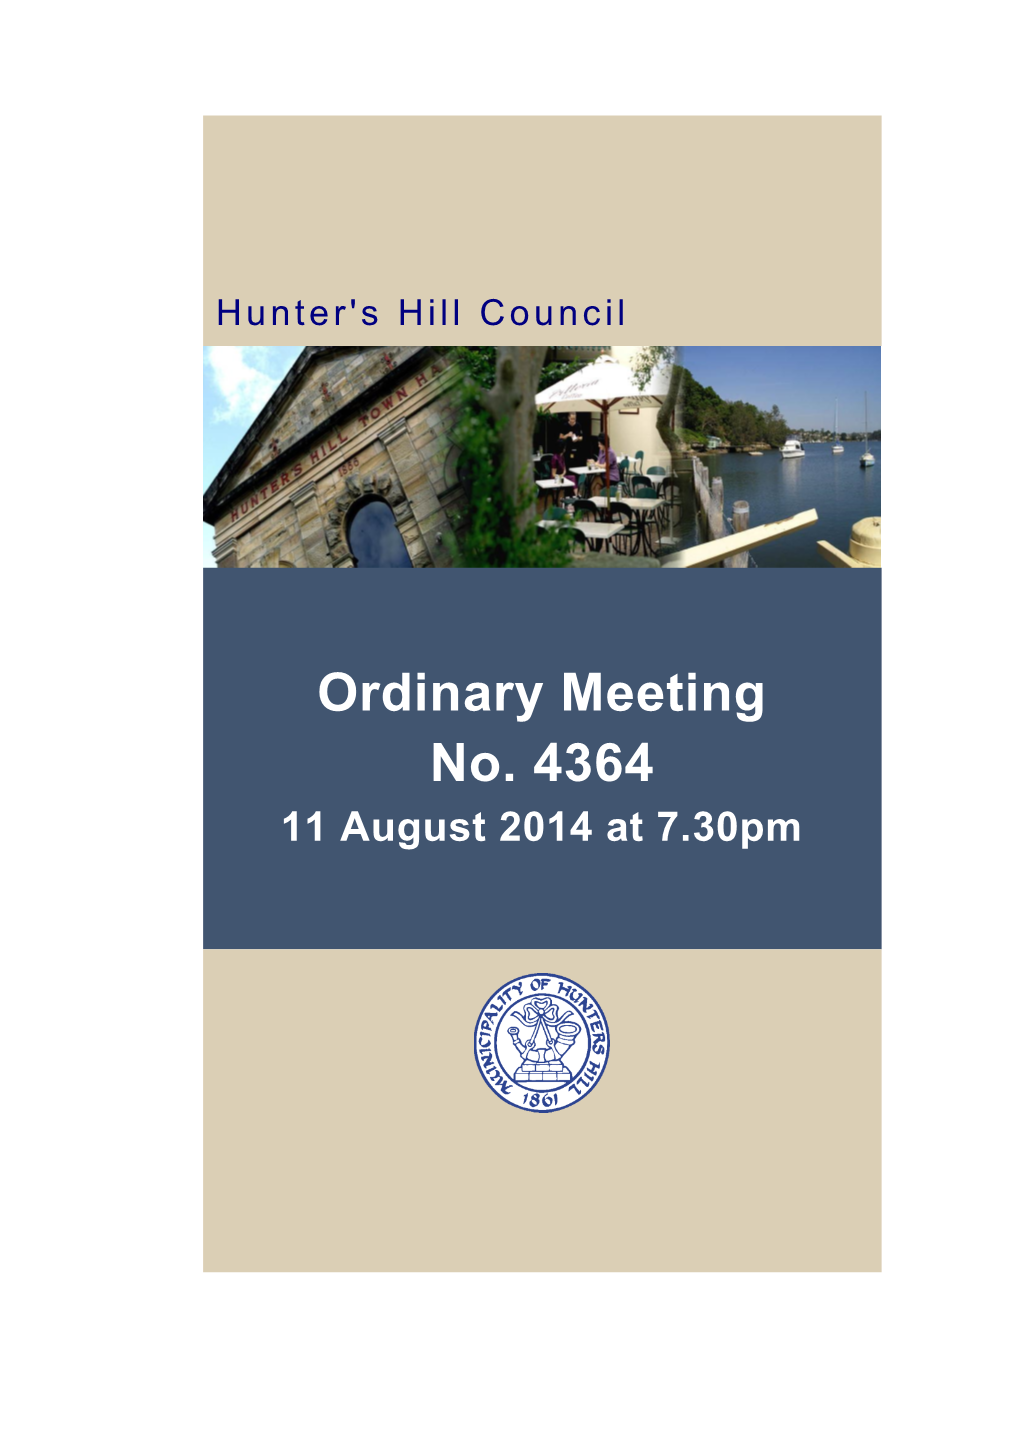 Meeting No. 4364 Held 11 August 2014